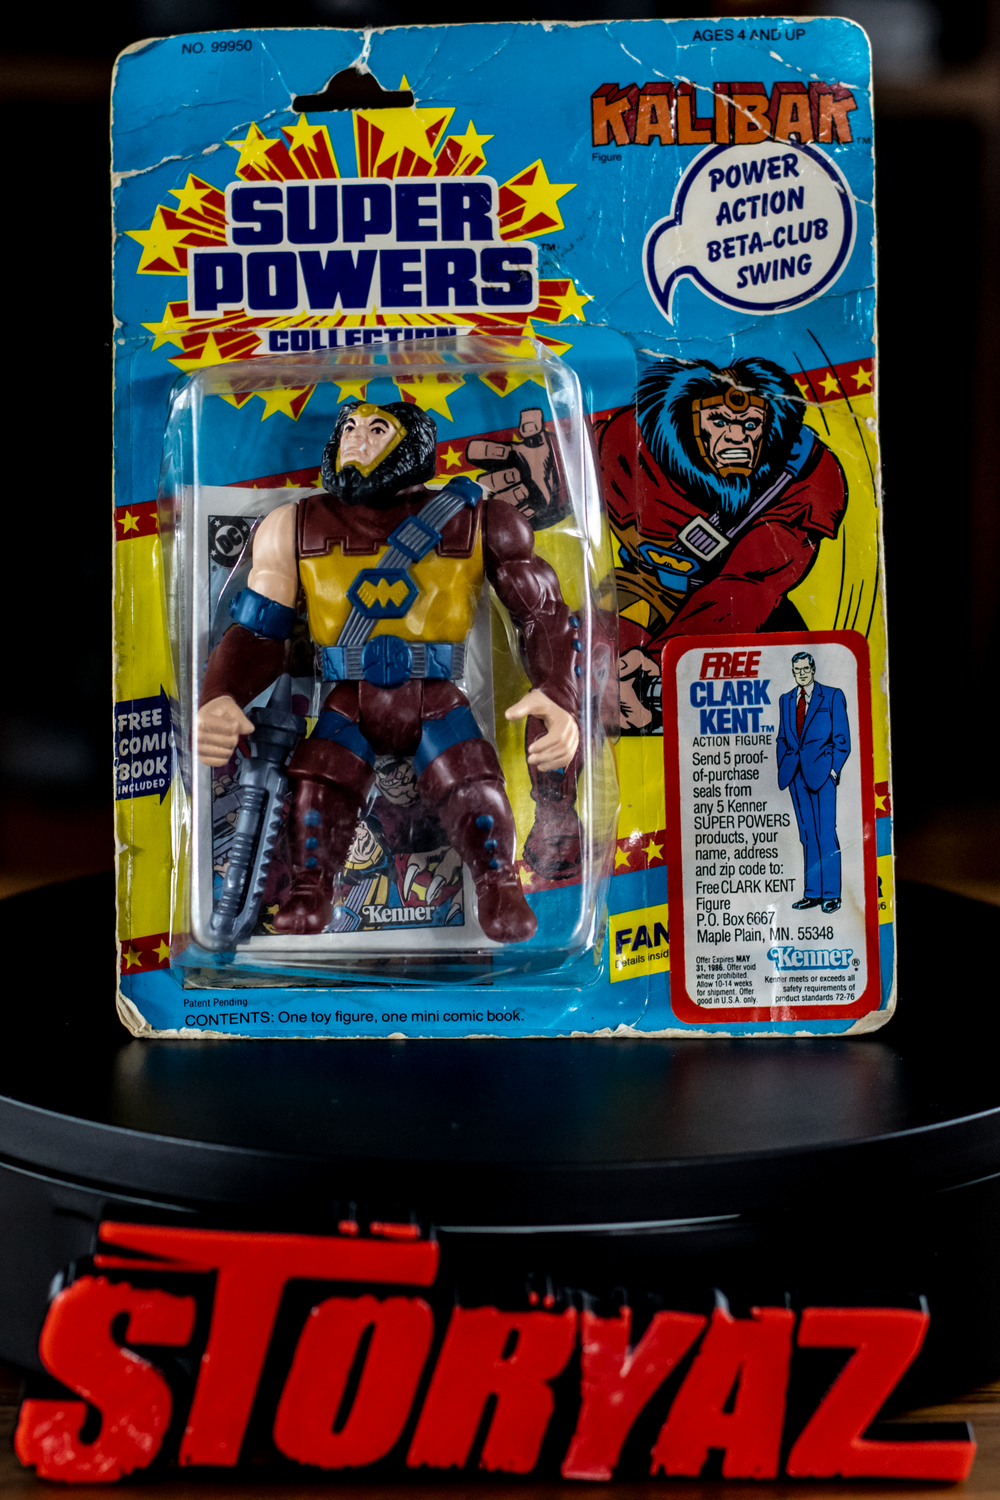 DC: SUPER POWERS COLLECTION "KALIBAK" Vintage